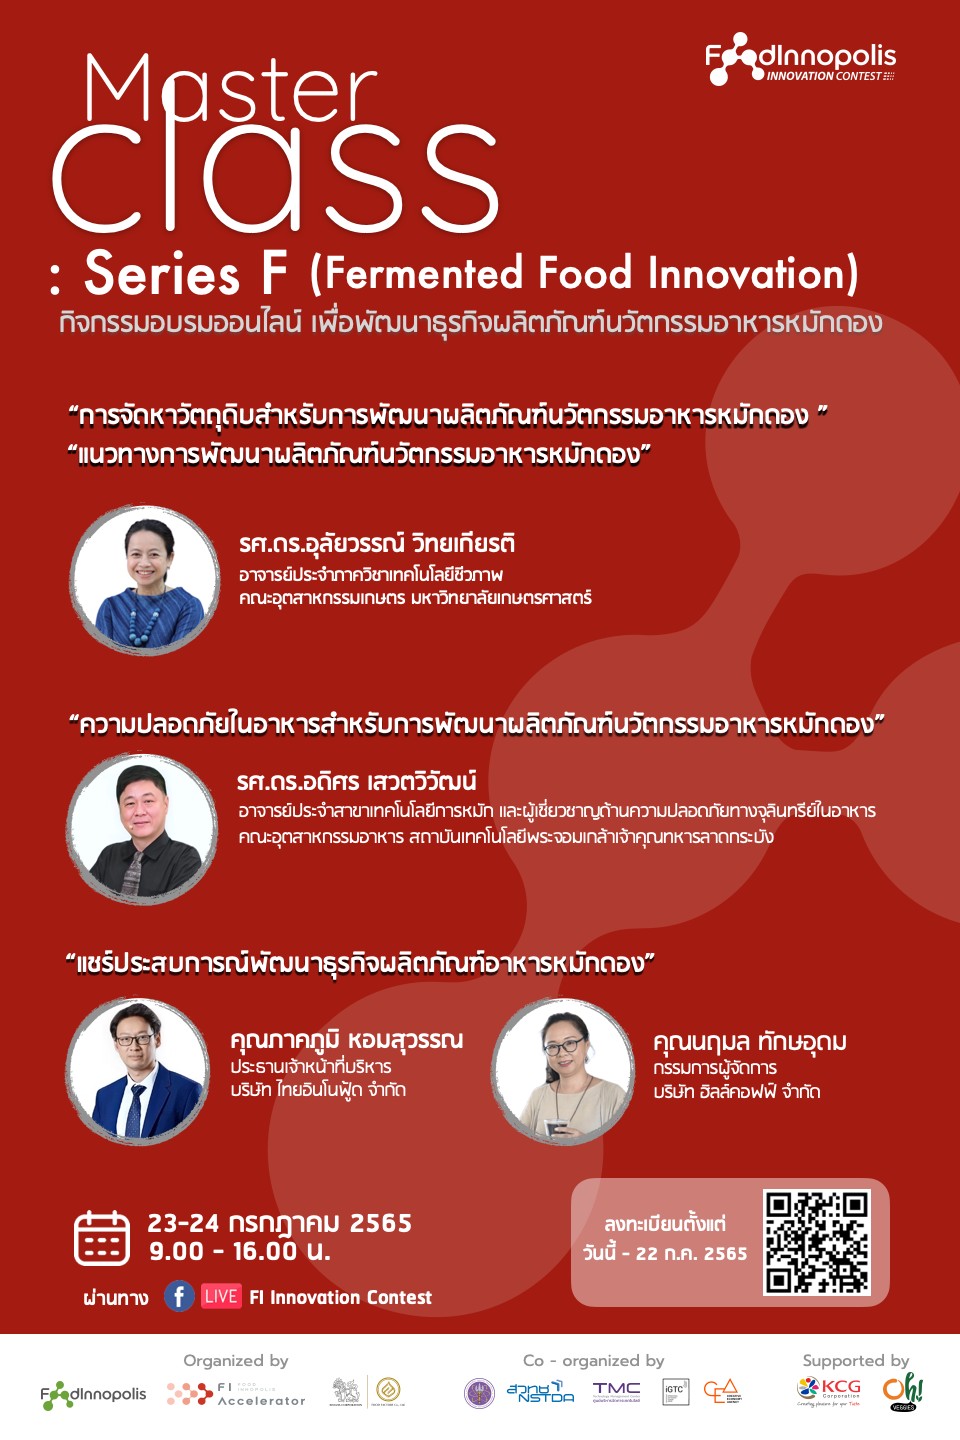 ขอเชิญชวนทุกท่านเข้าร่วมกิจกรรมอบรมออนไลน์ เพื่อพัฒนาธุรกิจผลิตภัณฑ์นวัตกรรมอาหารหมักดอง “MasterClass: Series F (Fermented Food Innovation) “